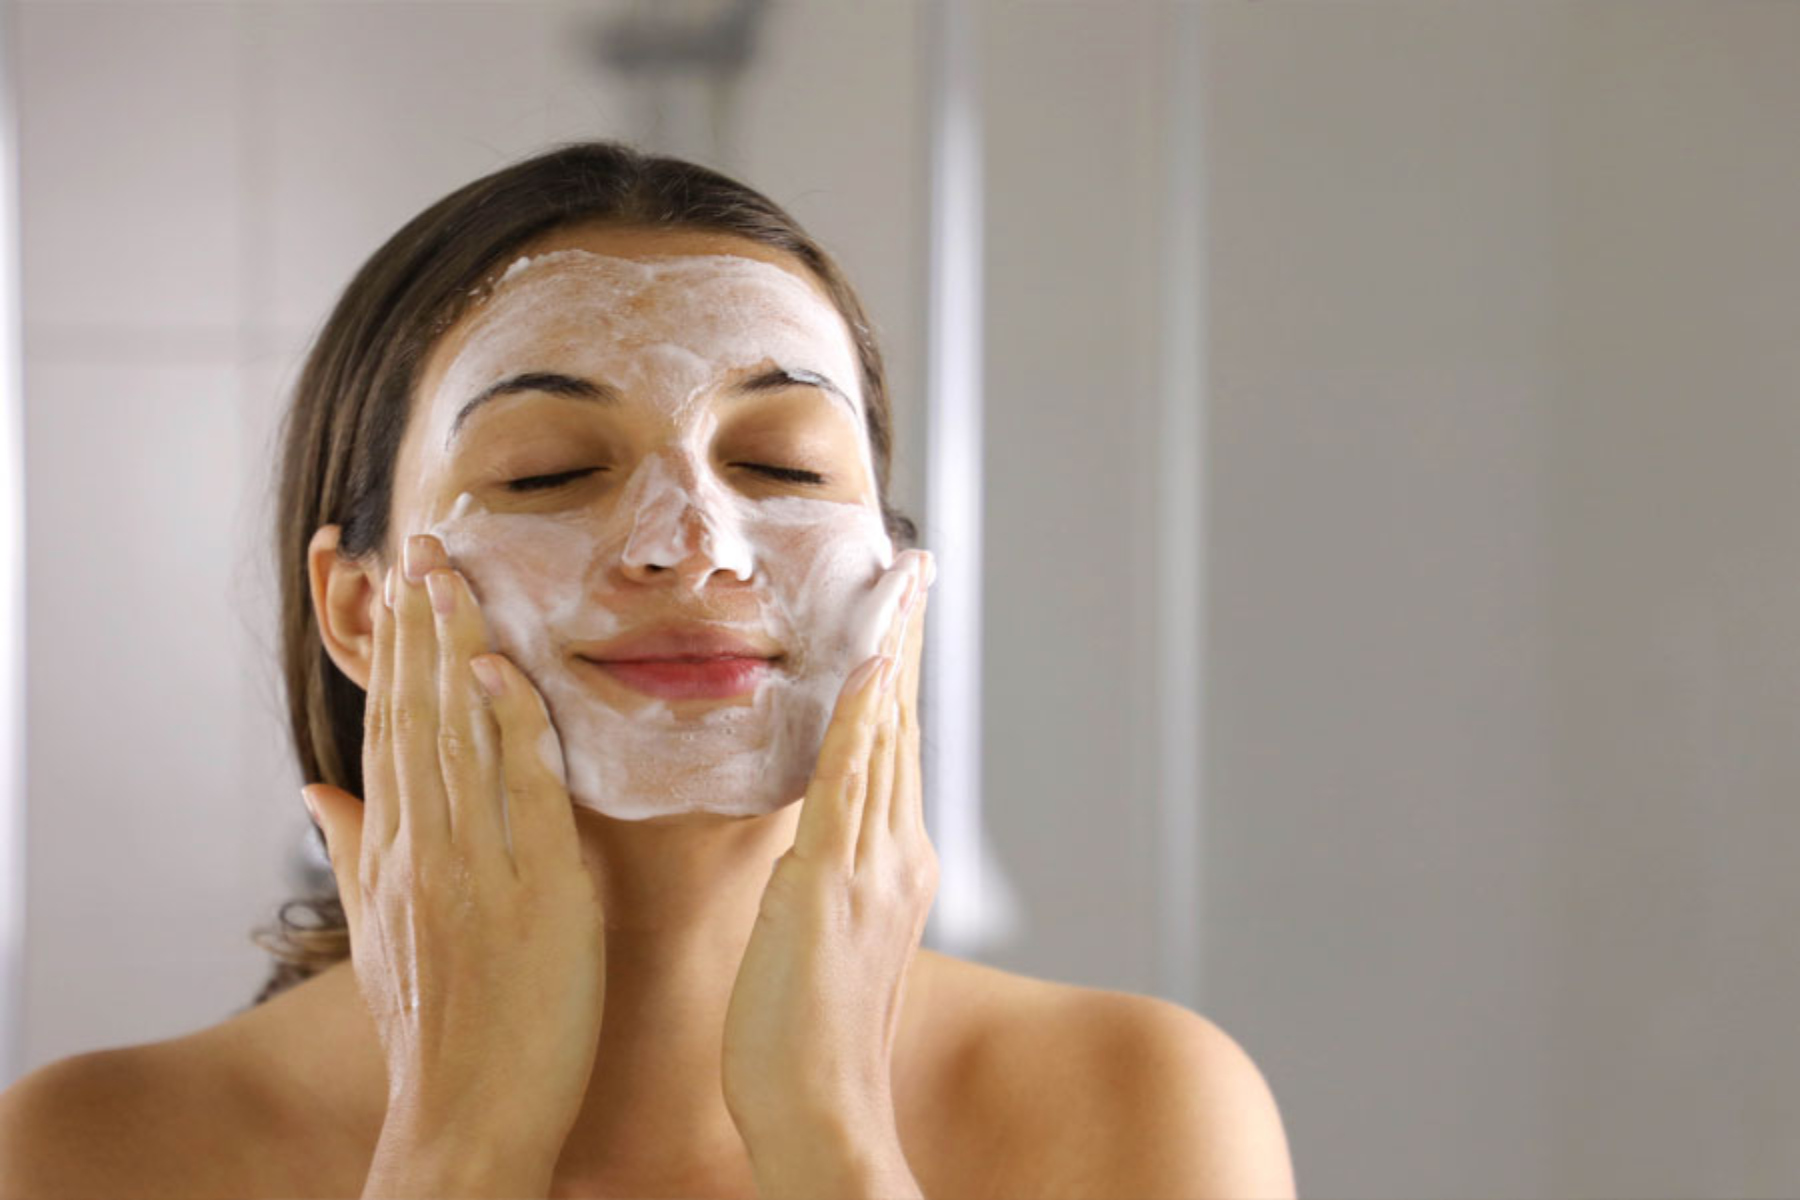 Καθαρισμός: Πώς μπορείτε να καθαρίσετε το πρόσωπό σας;